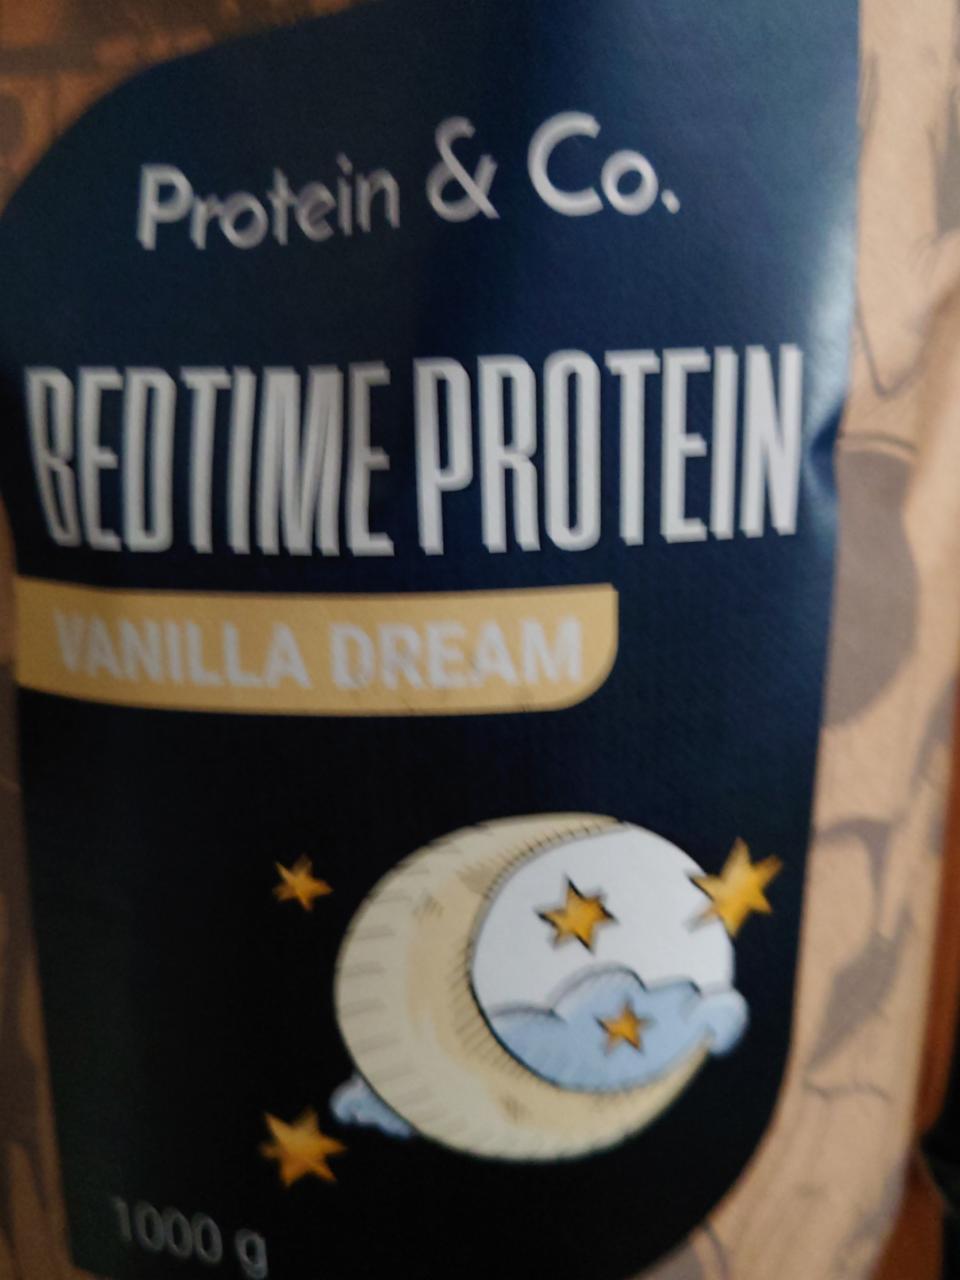 Fotografie - Bedtime Protein Vanilla Dream Protein & Co.